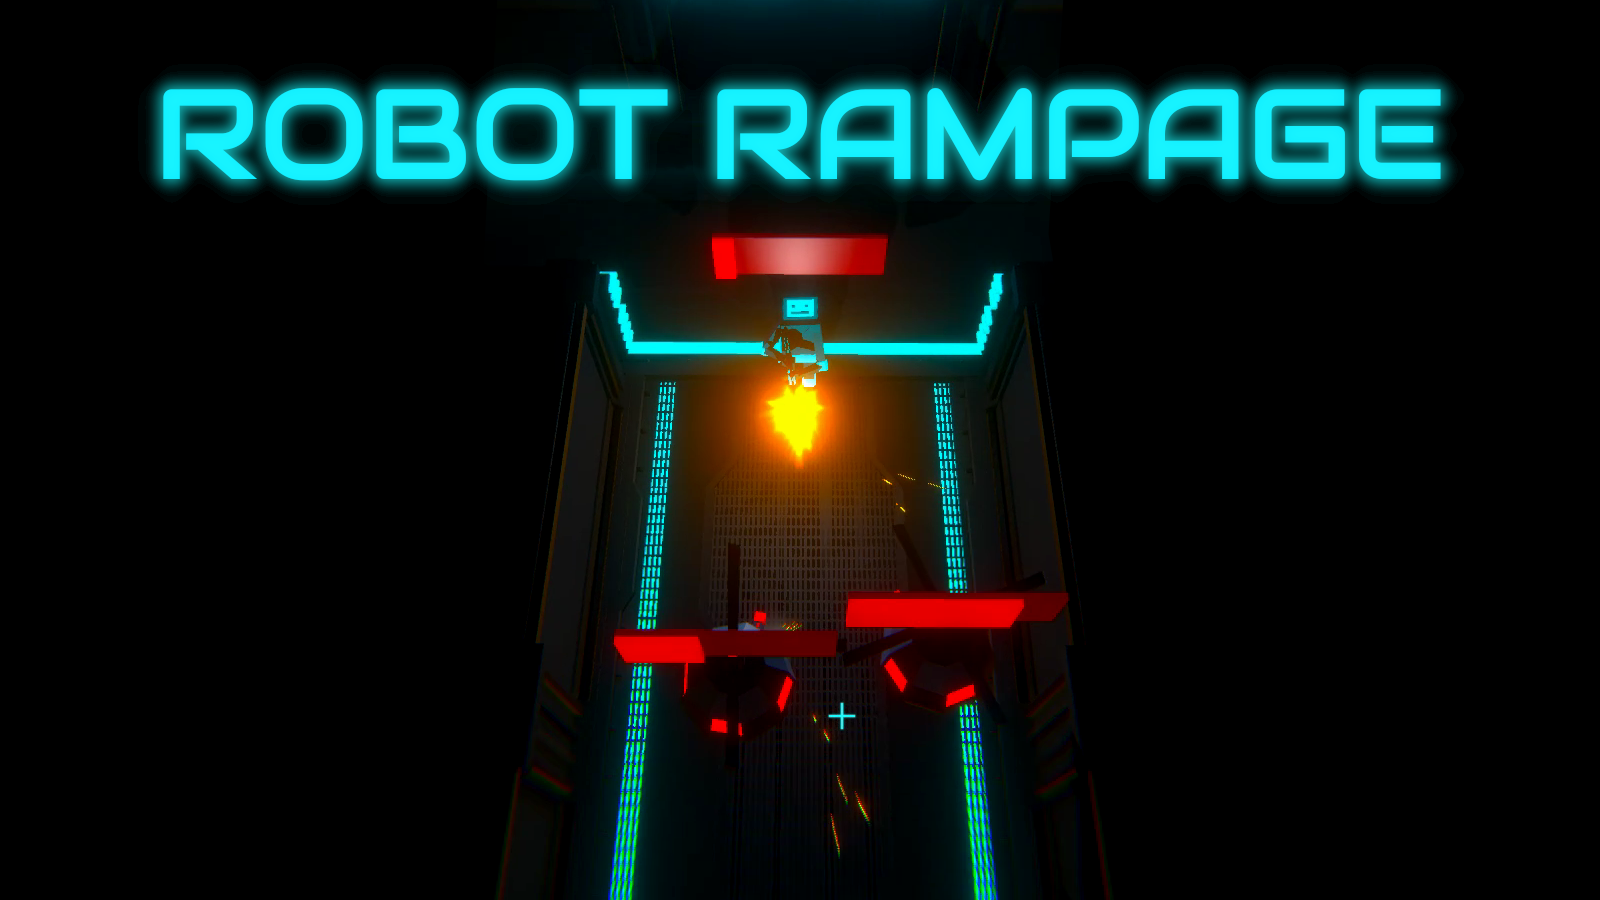 Robot Rampage